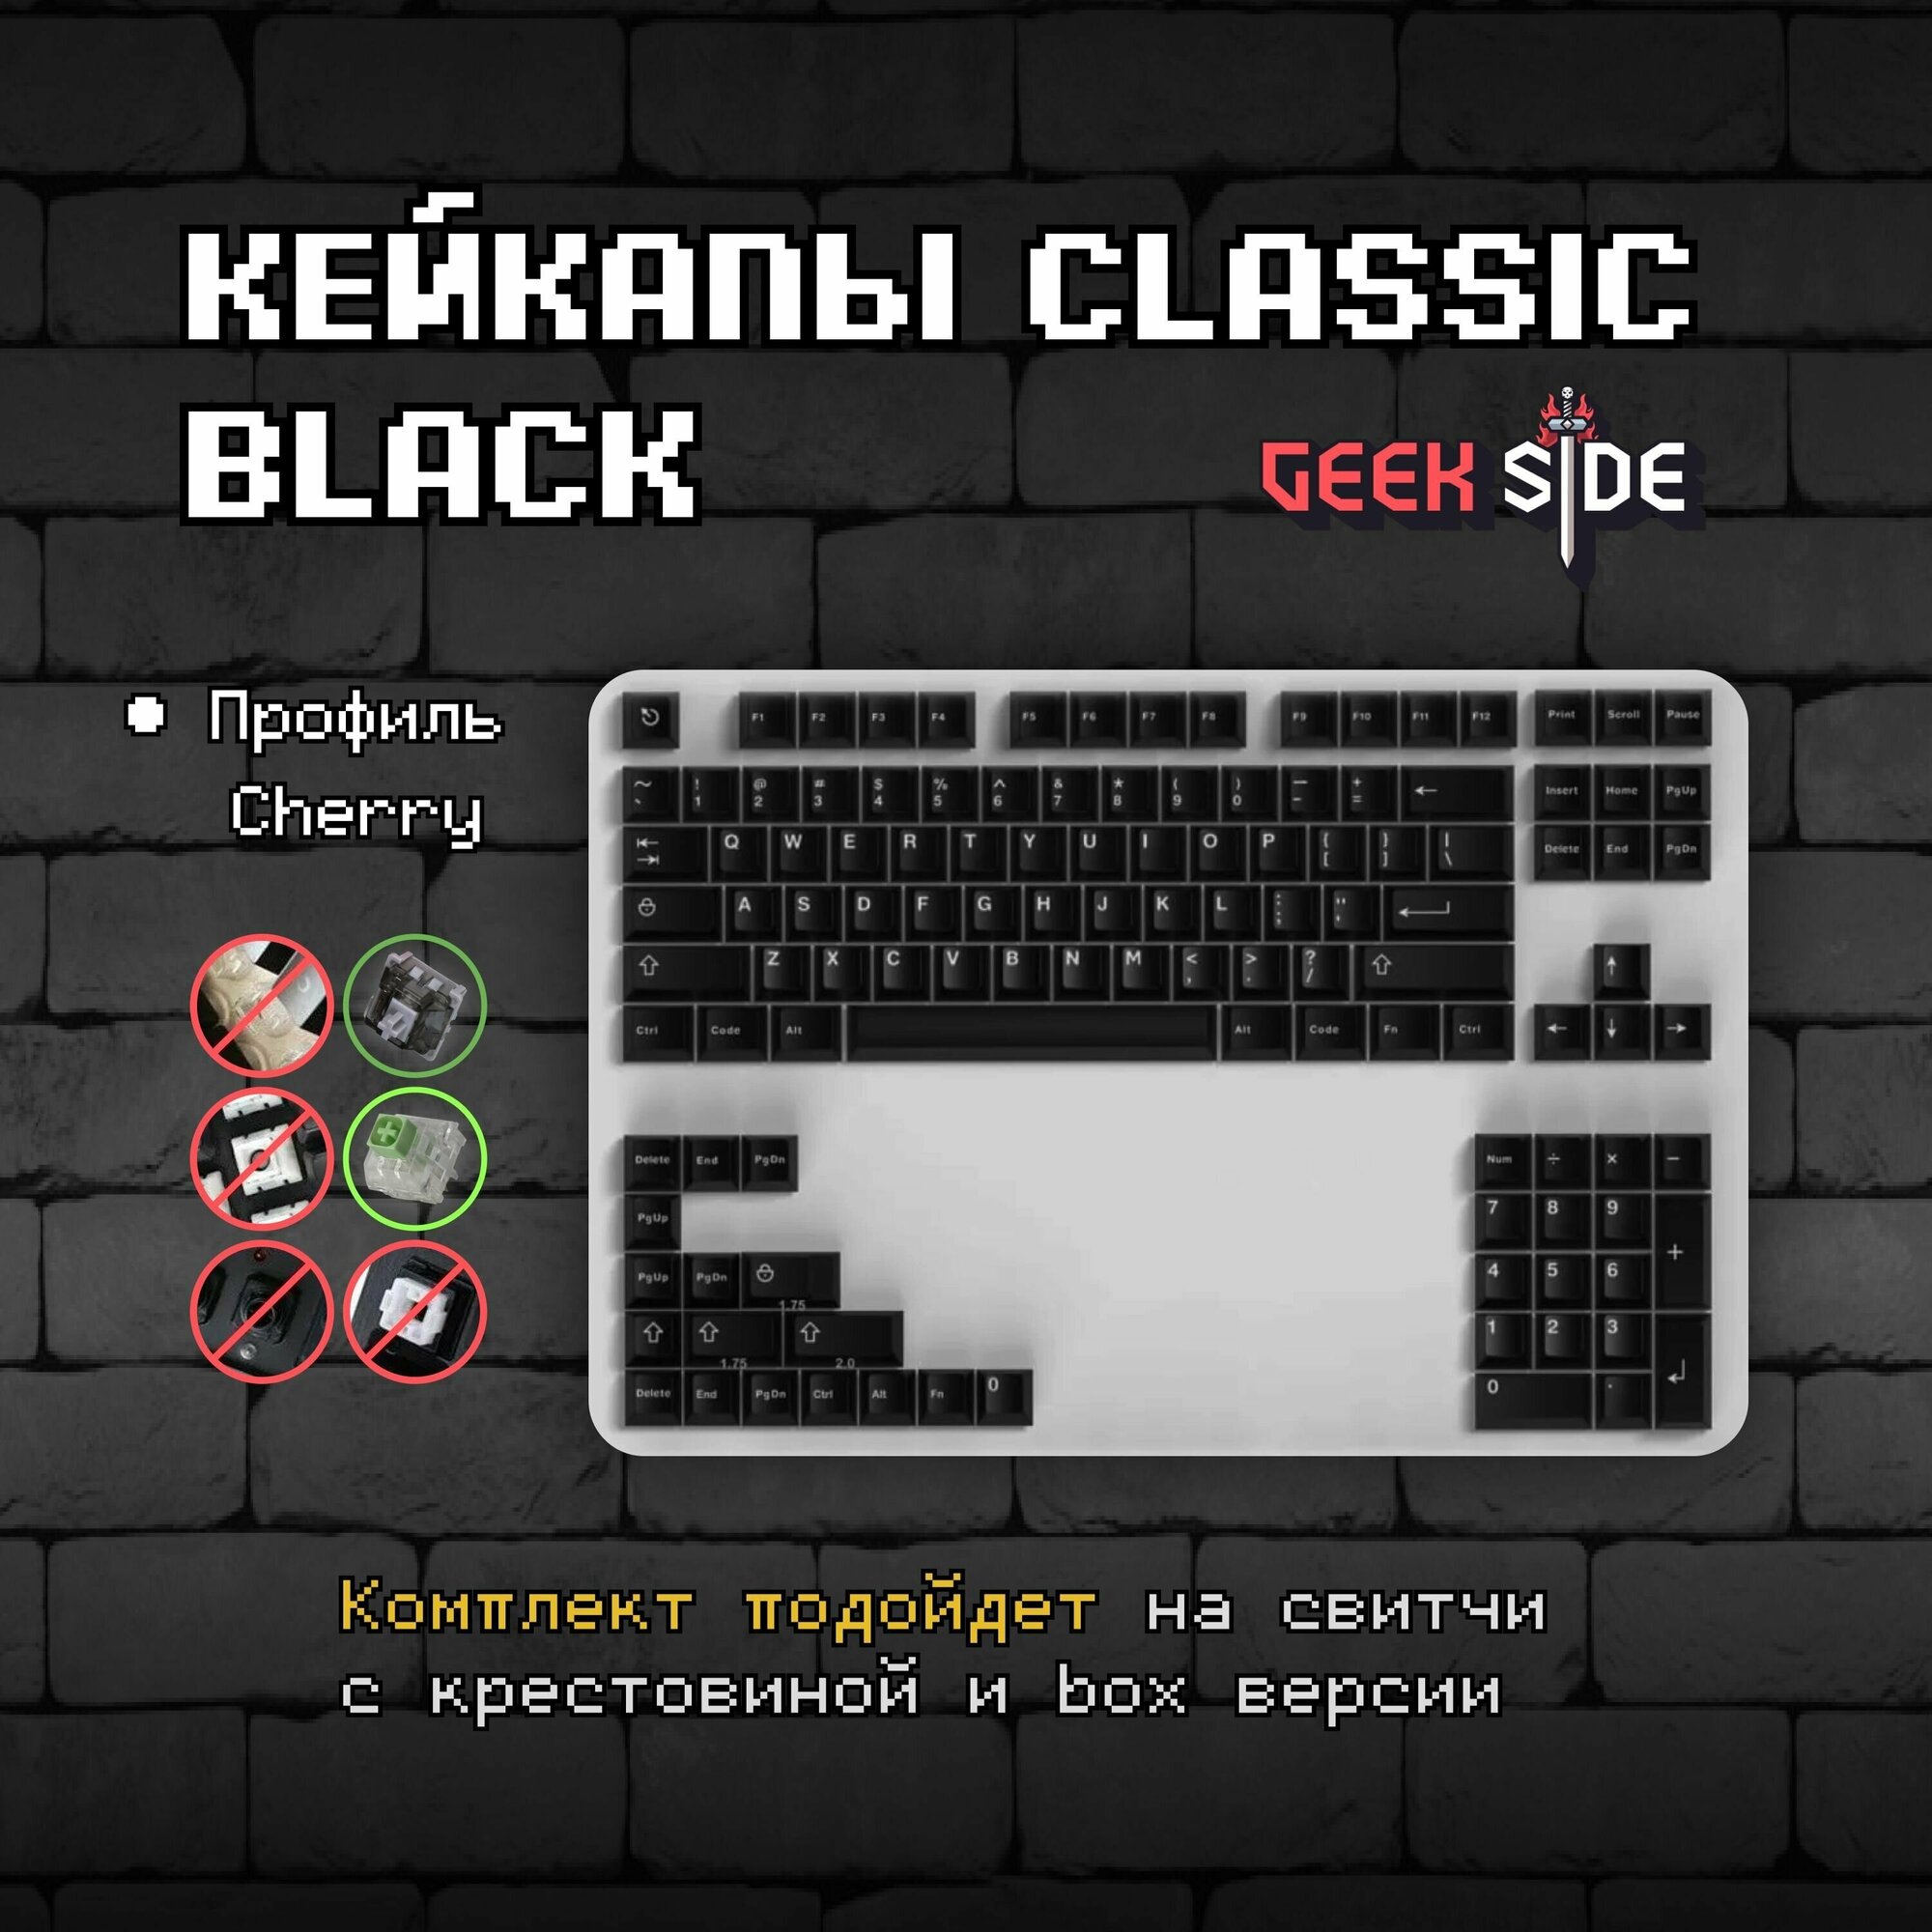 Кейкапы Classic Black для механической клавиатуры, профиль Cherry, PBT пластик